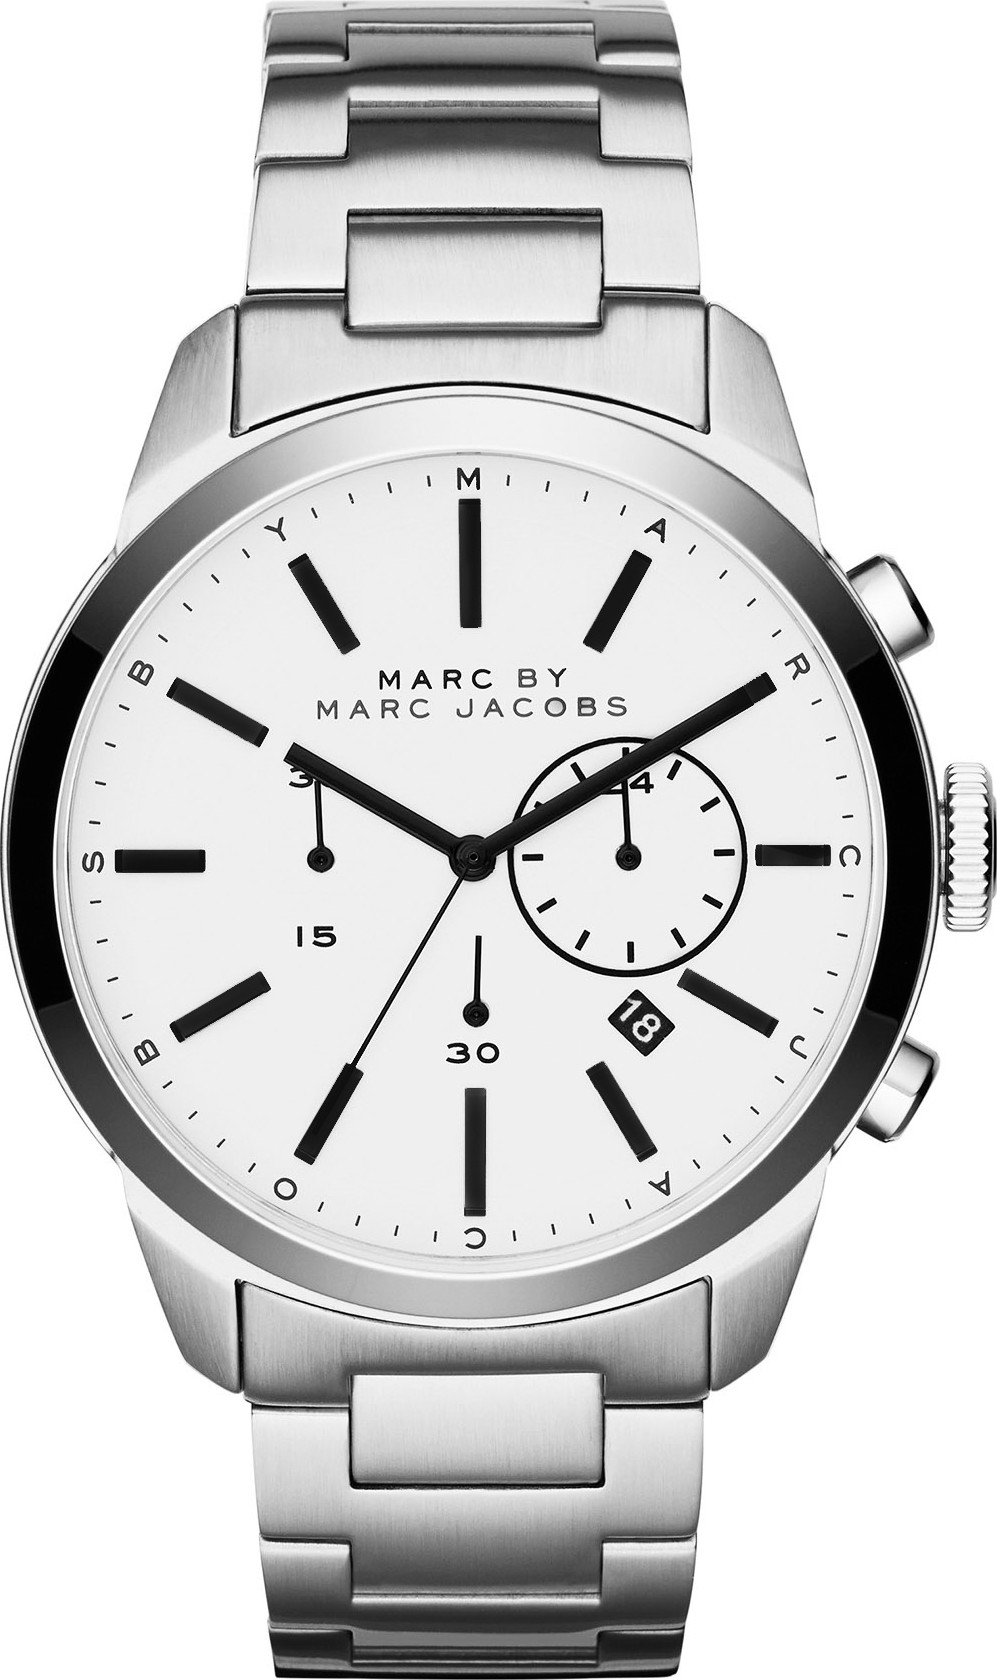 Đồng hồ nam Marc Jacobs - Chọn lựa tuyệt vời cho phong cách thời trang ...